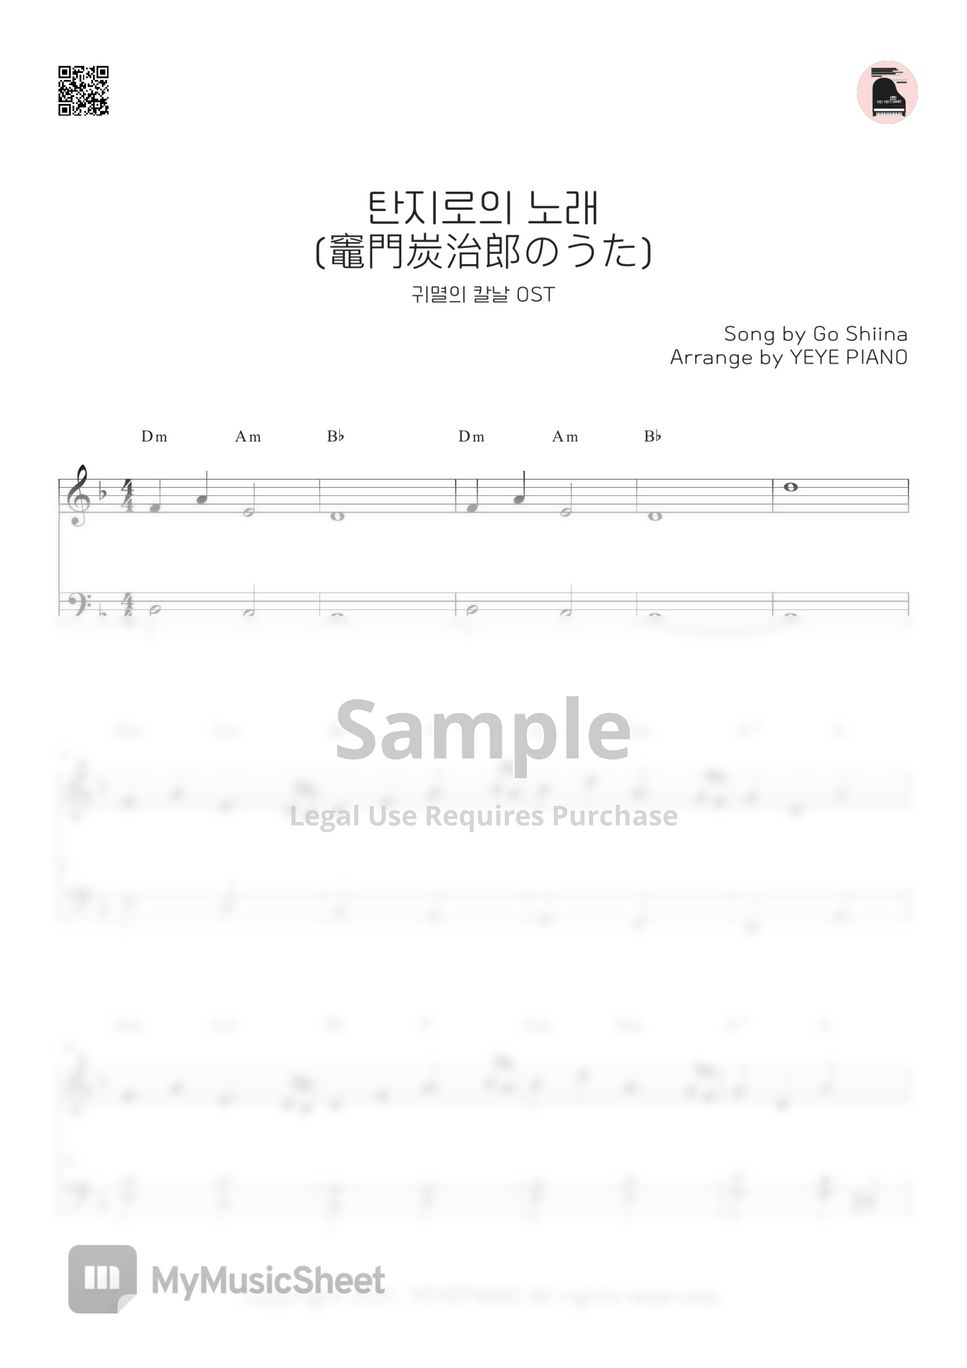 Demon Slayer OST - Tanjiro no Uta ★★☆☆☆ by YEYE PIANO